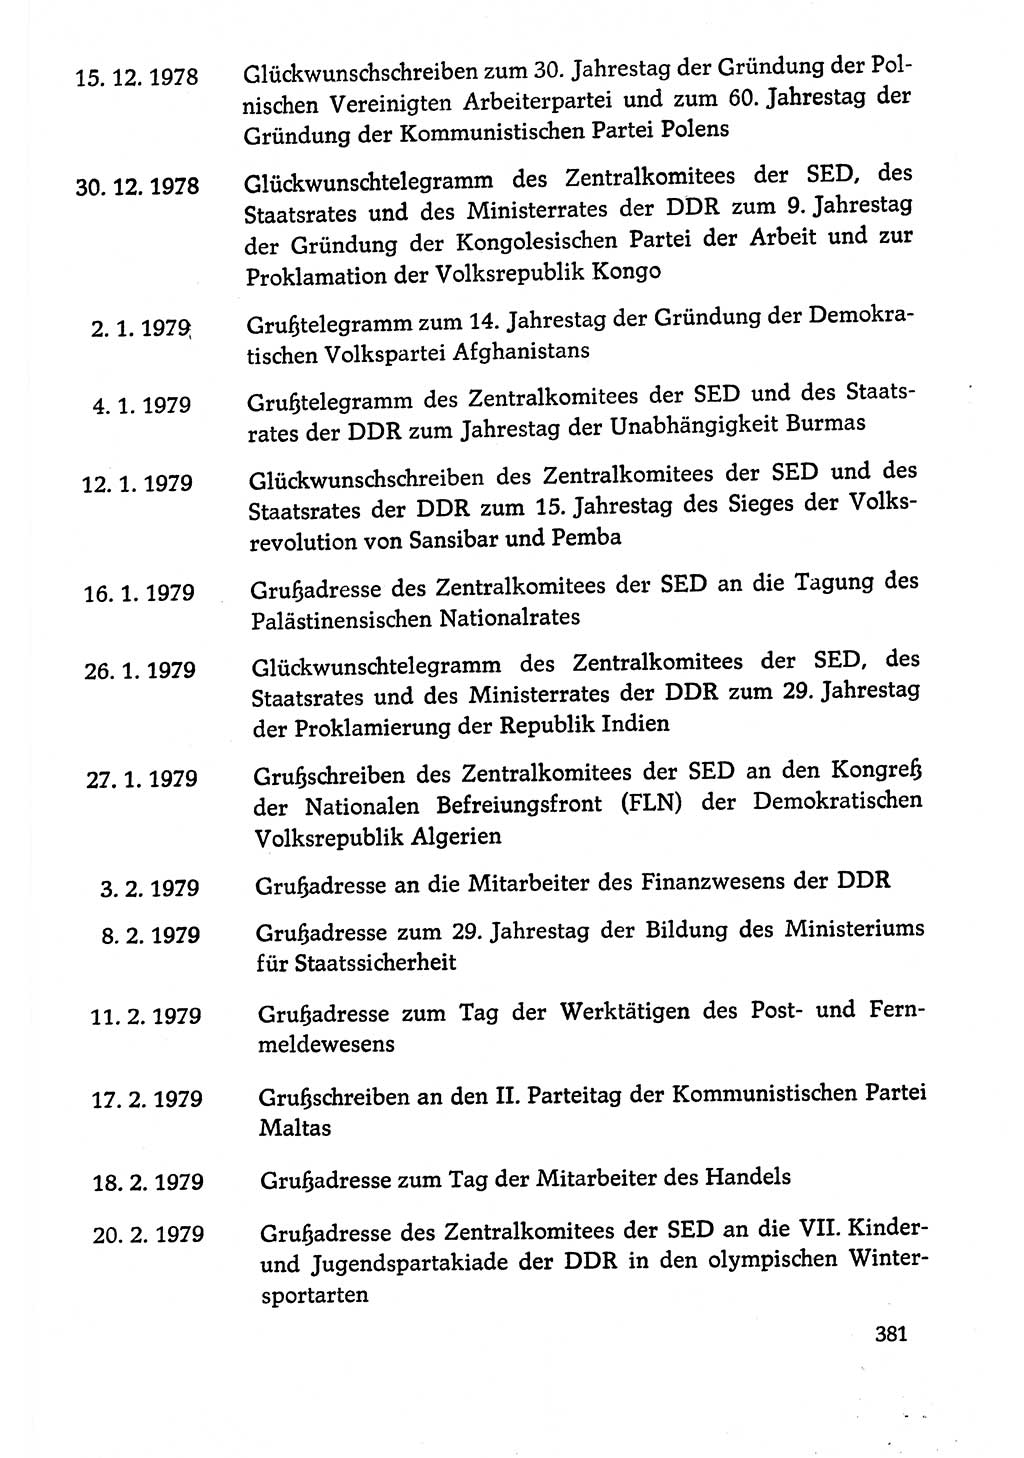 Dokumente der Sozialistischen Einheitspartei Deutschlands (SED) [Deutsche Demokratische Republik (DDR)] 1978-1979, Seite 381 (Dok. SED DDR 1978-1979, S. 381)